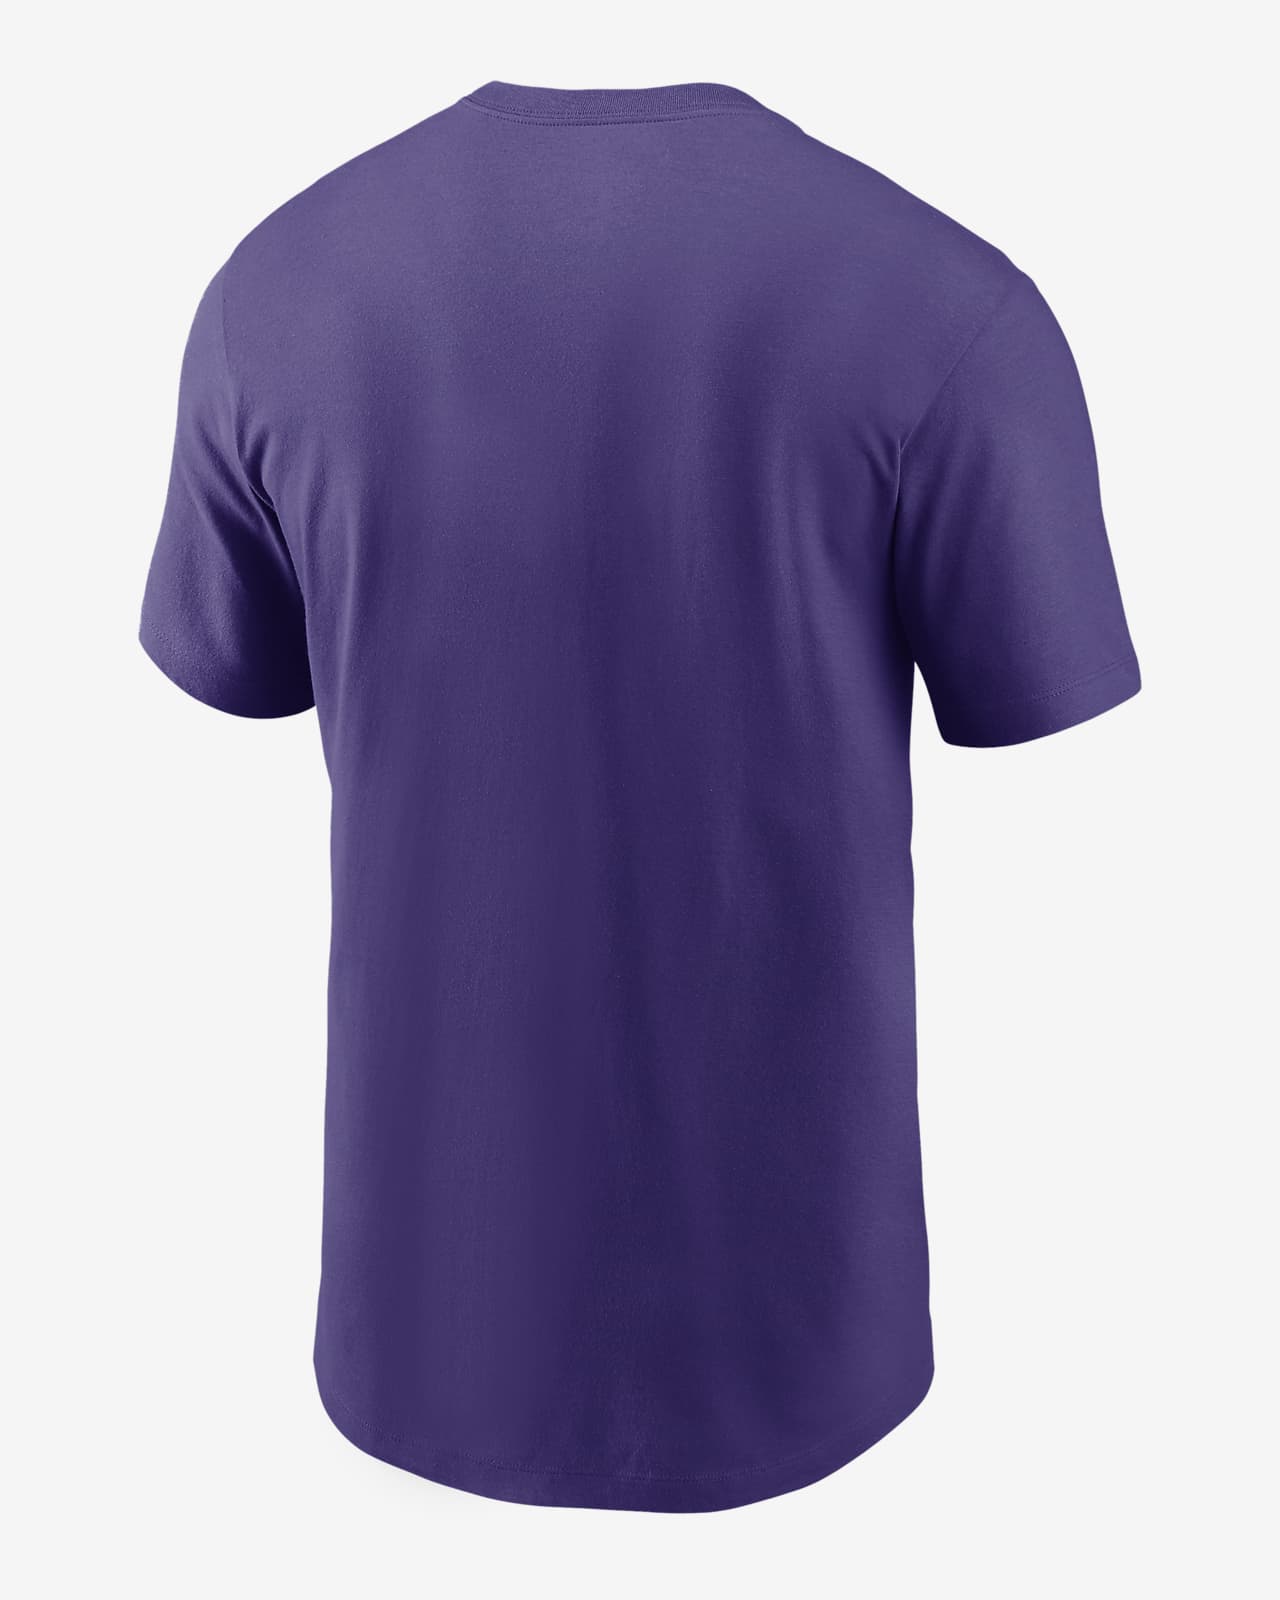 Genuine Merchandise Men's Tampa Bay Rays T-Shirt NWT